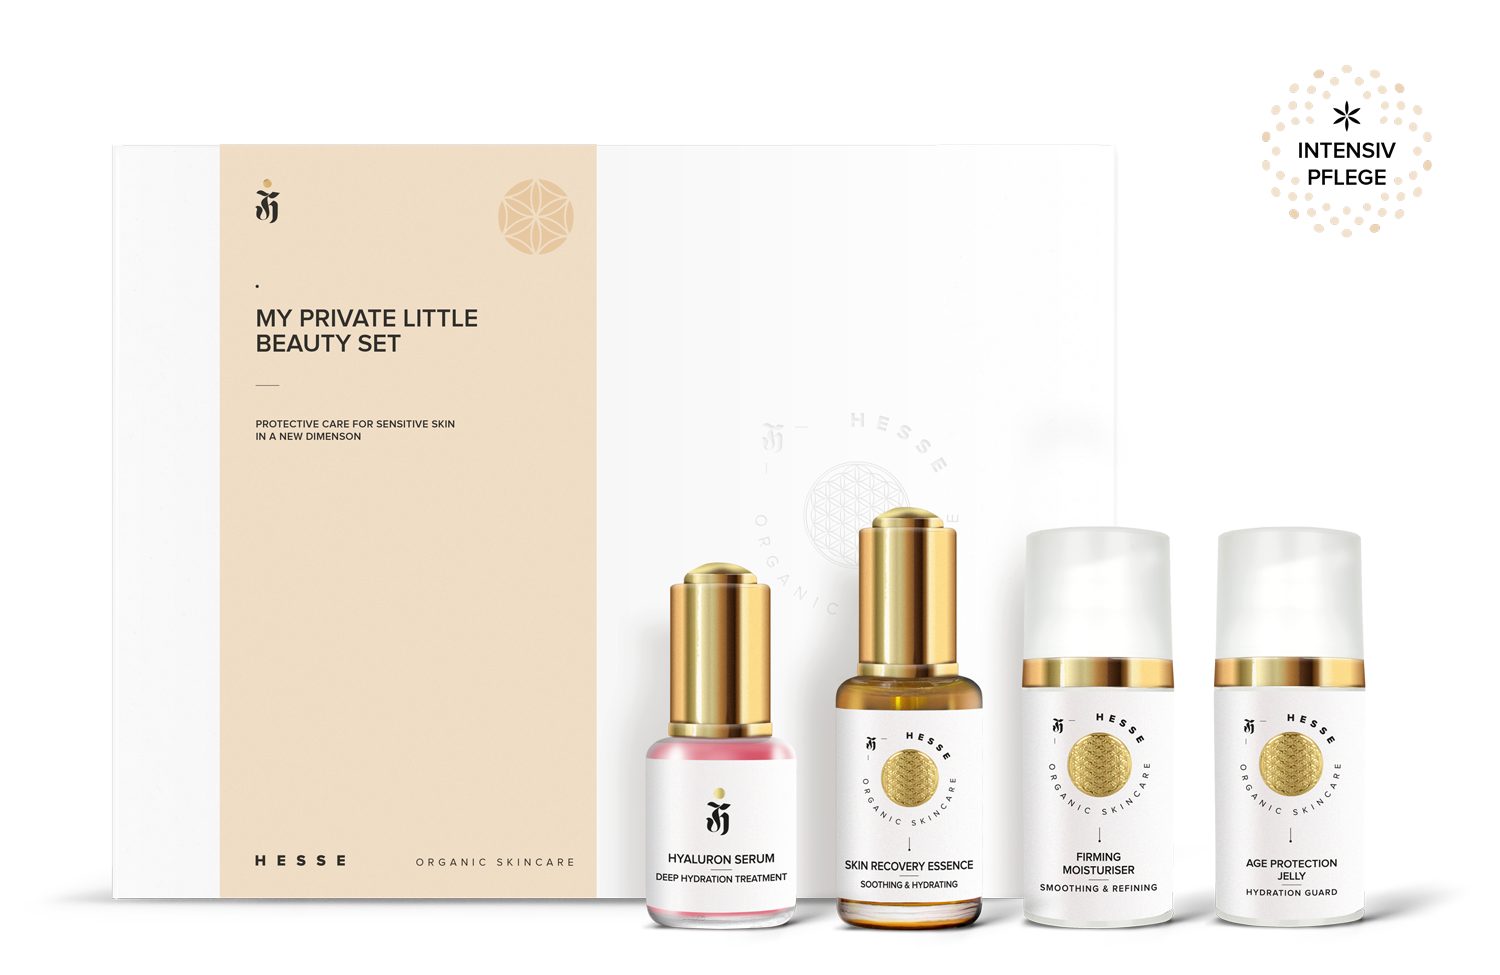 Hesse Organic Skincare Gesichtspflege-Set INTENSIV PFLEGESET für müde Haut mit 4 Power-Produkten